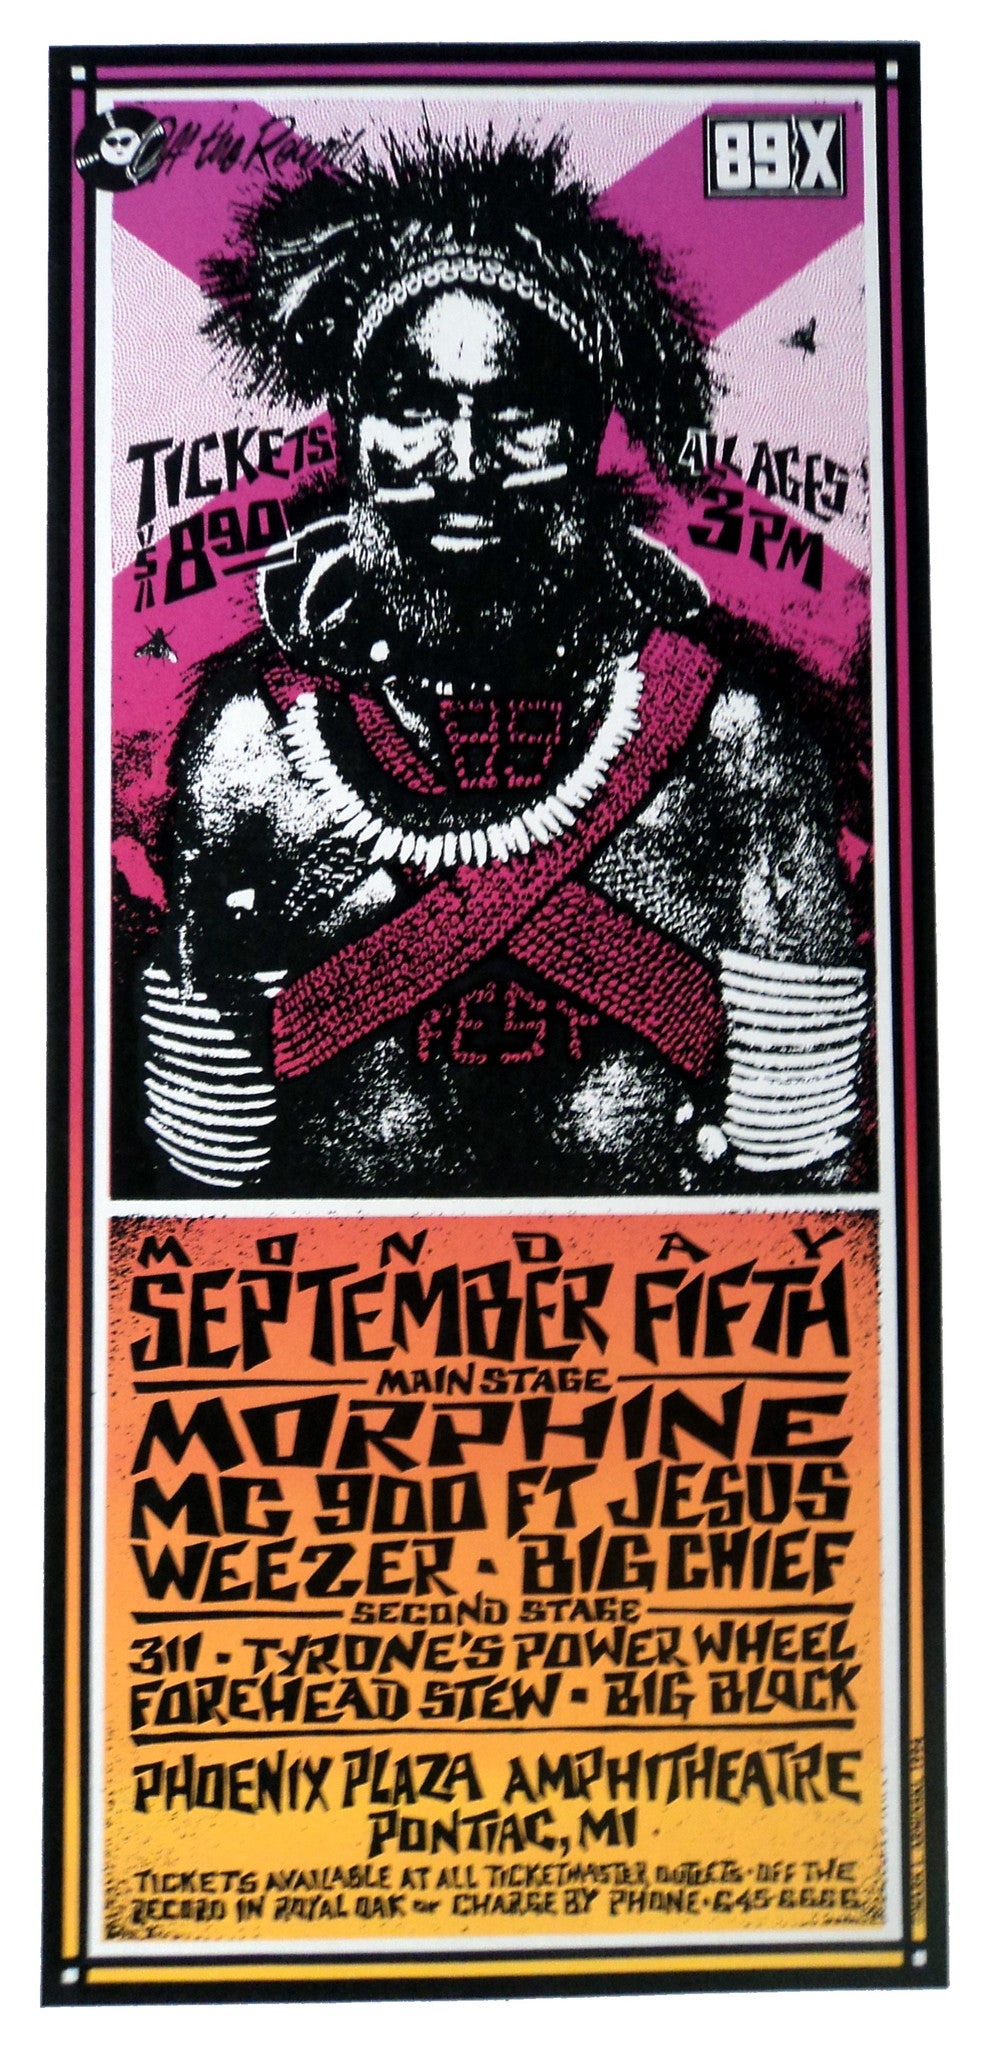 Mark Arminski - 1994 - 89X-Fest Concert Poster